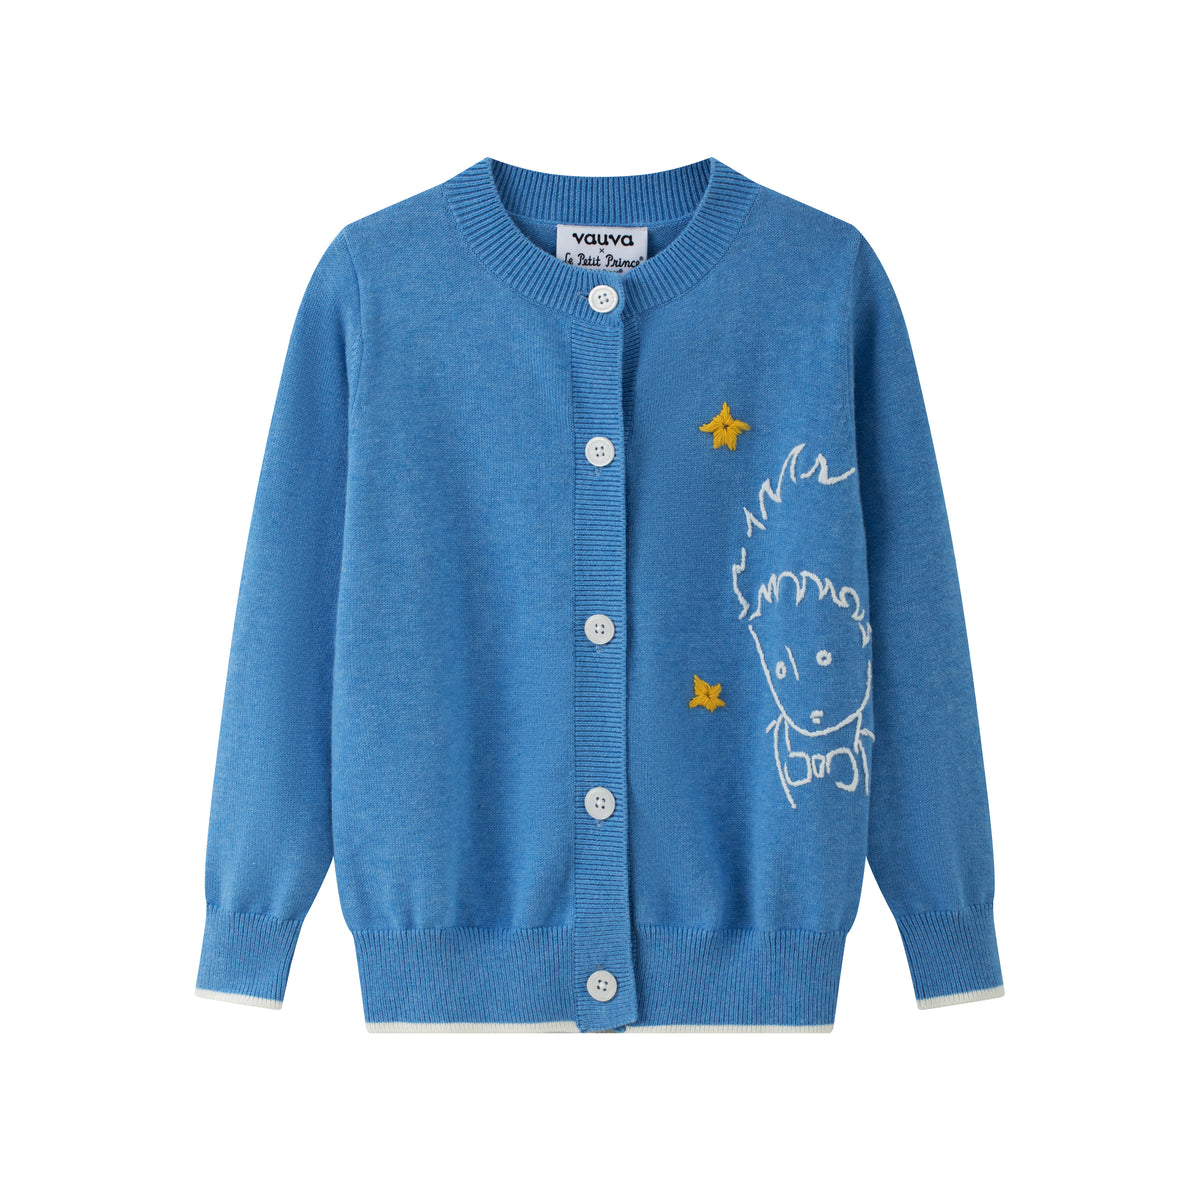 Vauva x Le Petit Prince - Kids Cashmere Cardigan (Blue)-product image front